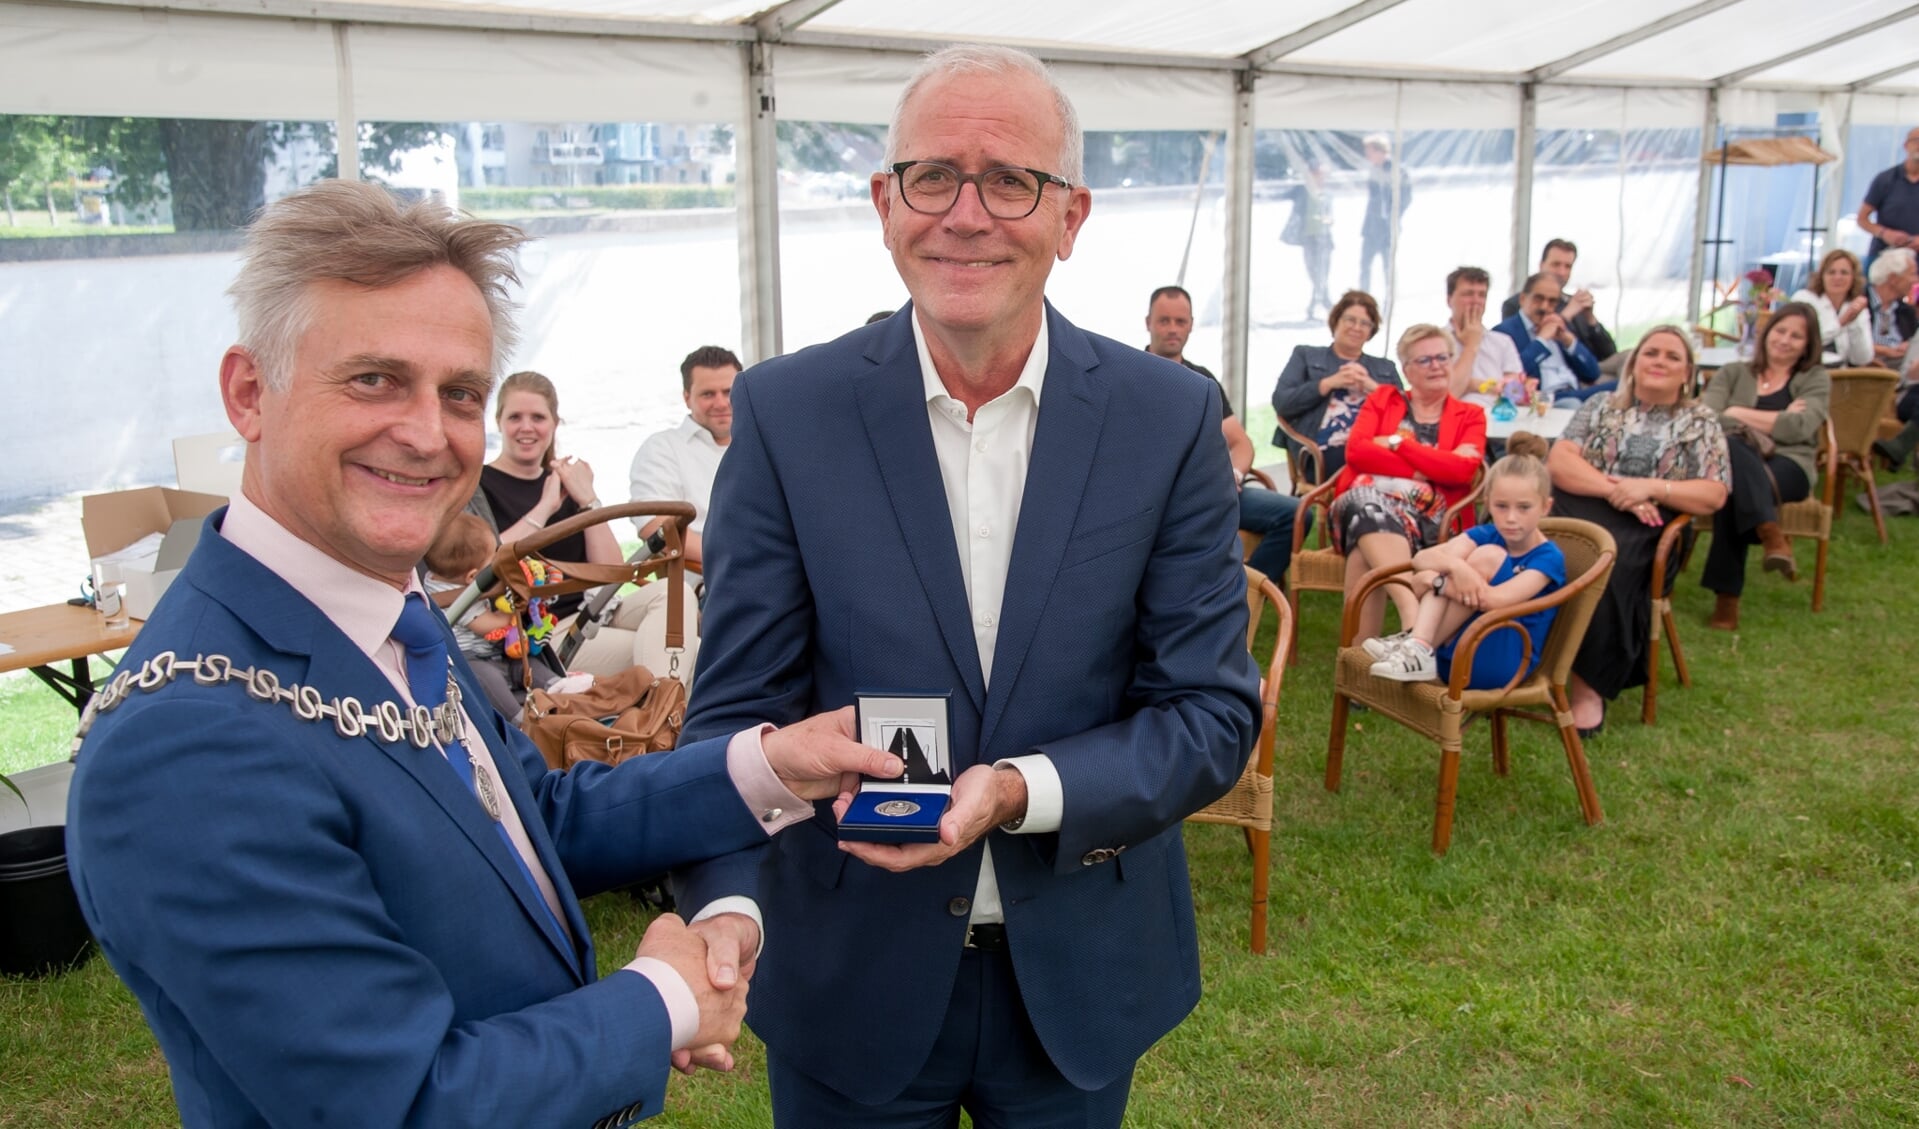 Age Veenstra kreeg bij zijn afscheid als gemeentesecretaris van Soest uit handen van burgemeester Rob Metz blijvend eerbetoon in de vorm van de gemeentepenning van Soest.